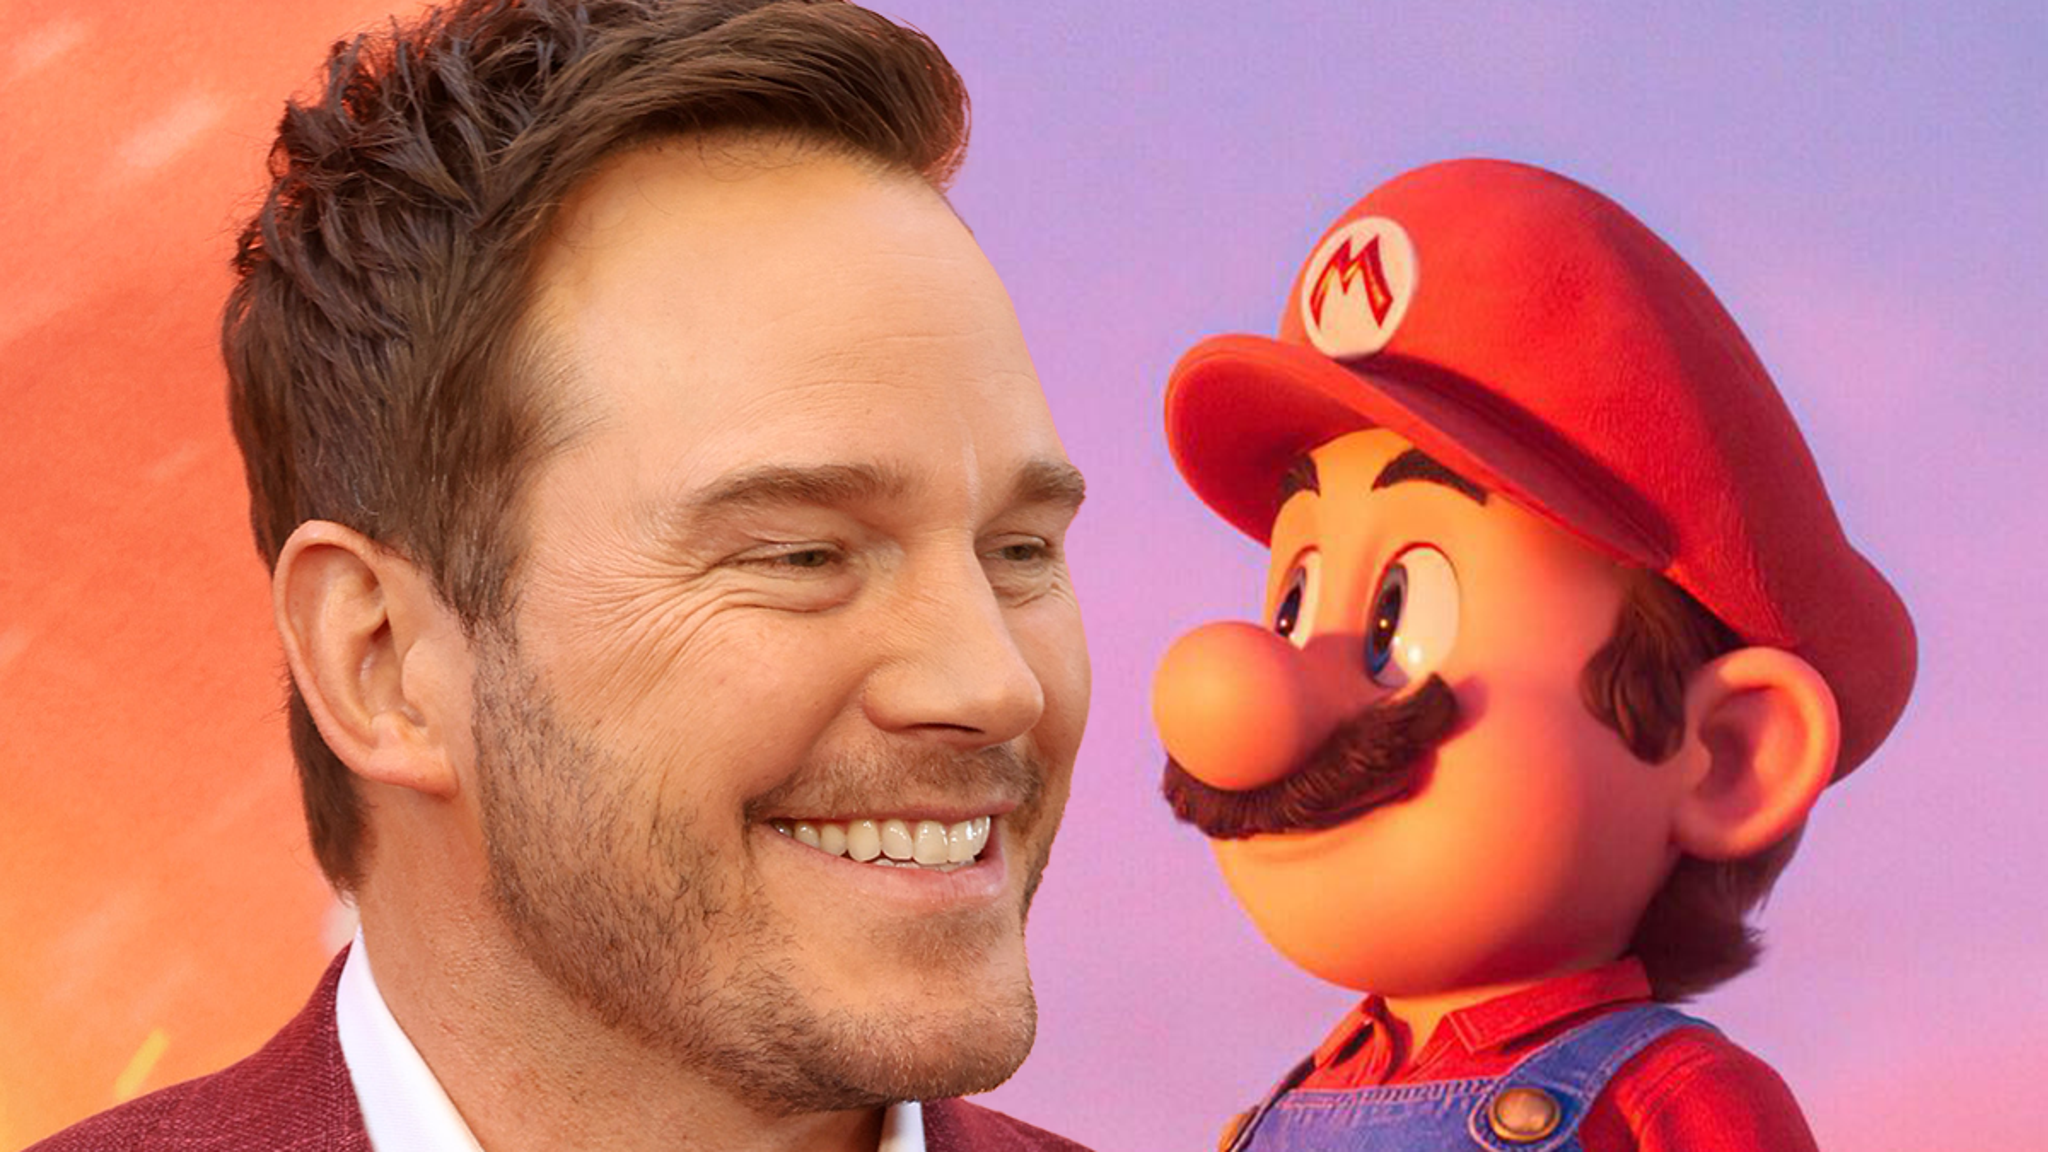 La voz de Chris Pratt como Mario en la nueva película no es terrible, Internet decide